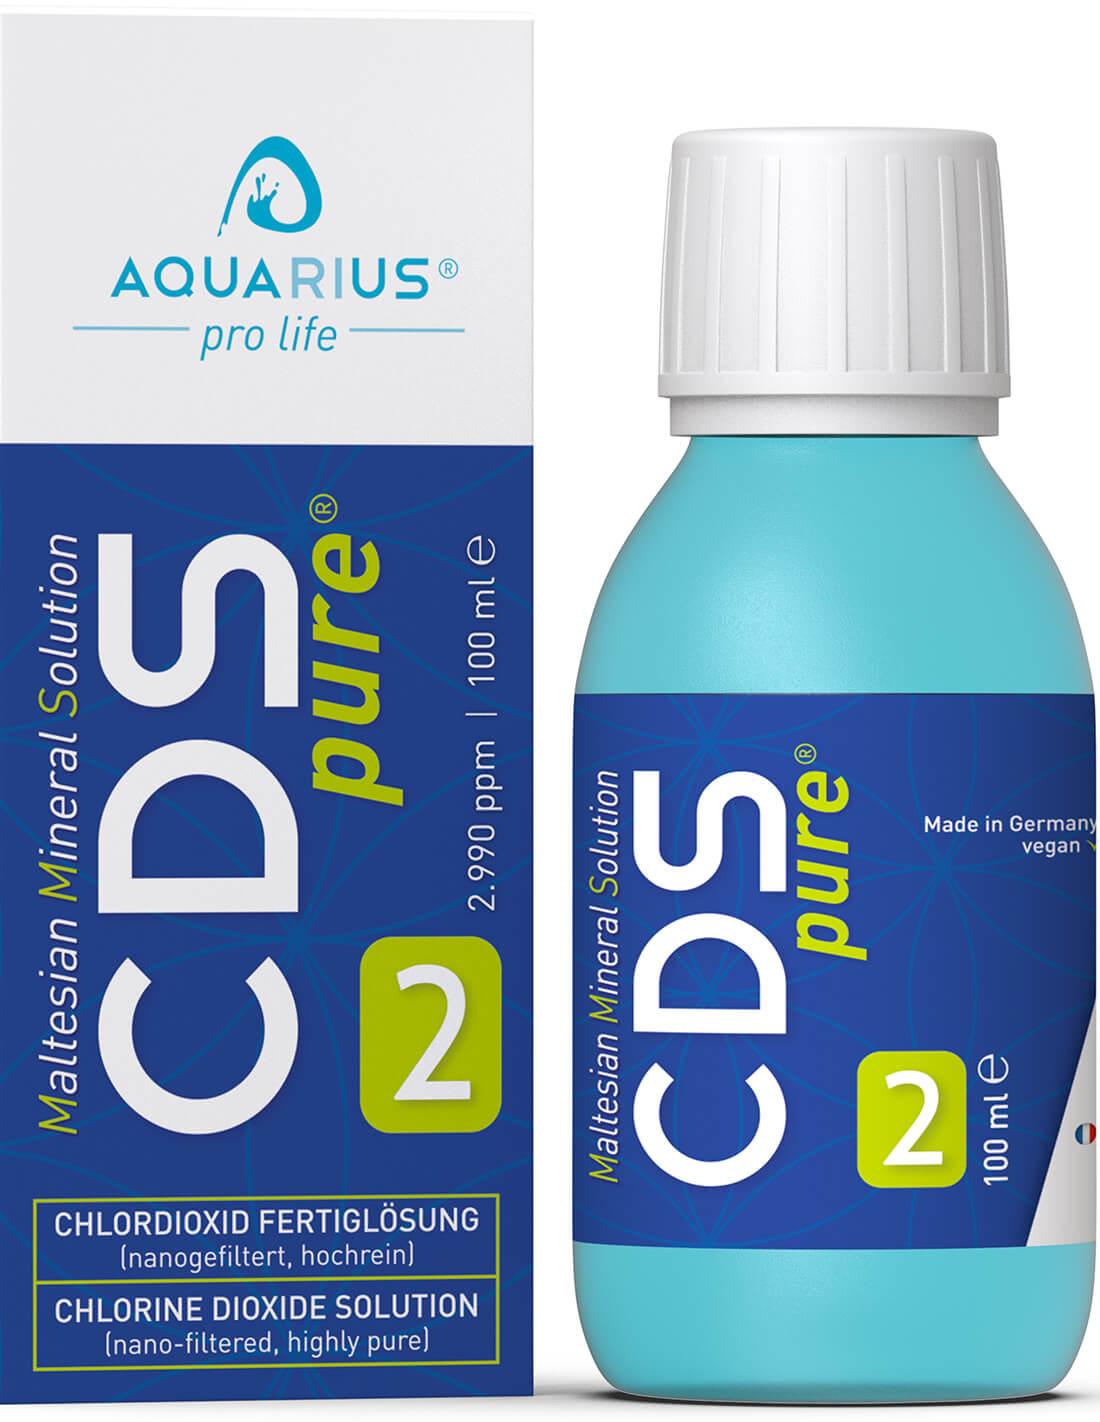 CDSpure® - AQUARIUS pro life 100 ml